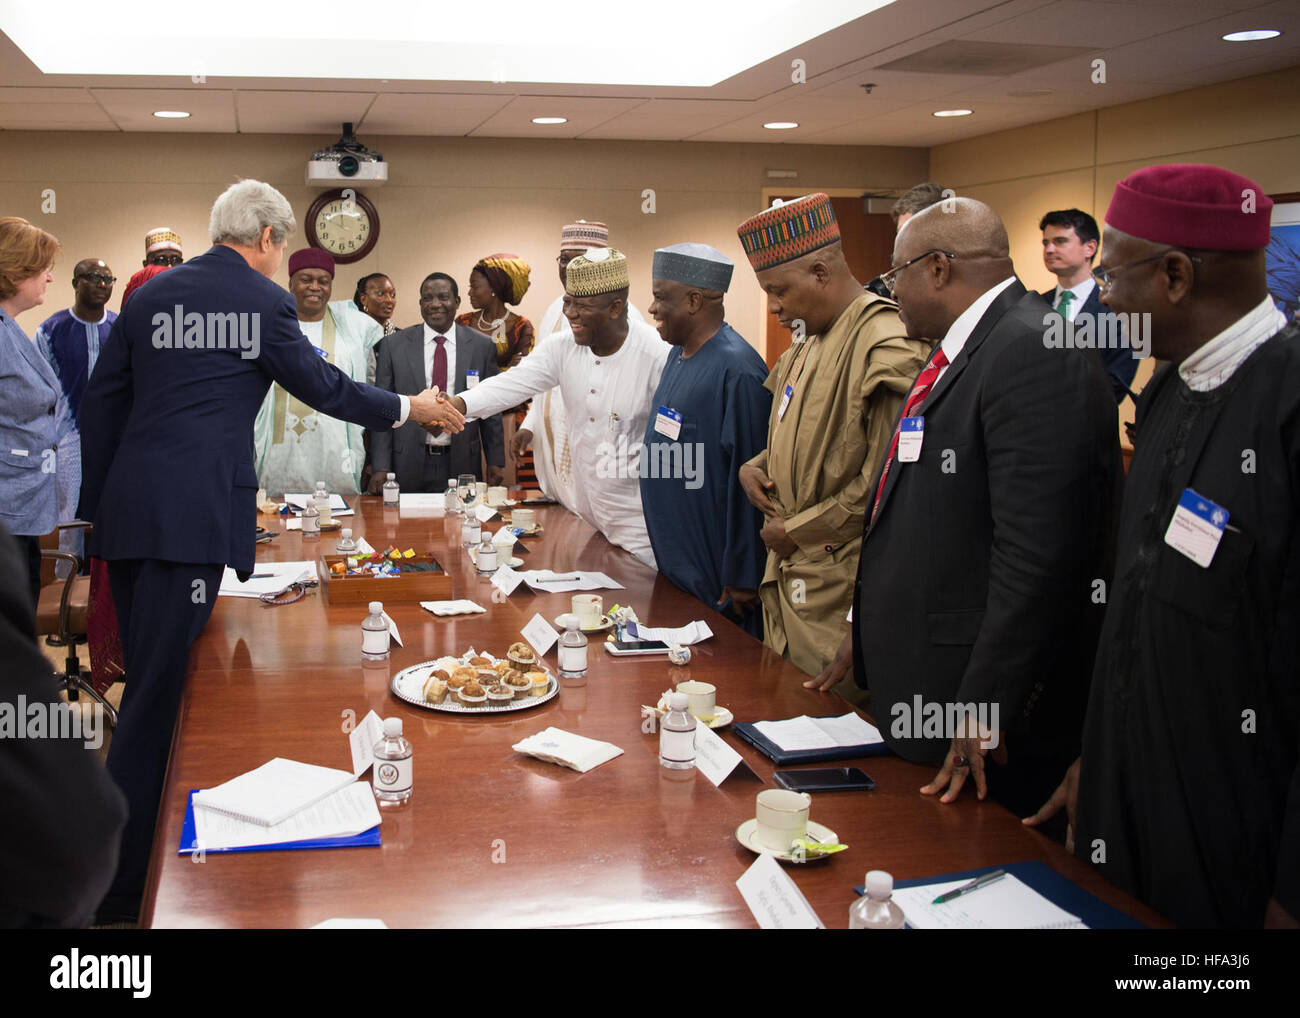 Le secrétaire d'Etat John Kerry, avec le sous-secrétaire d'État à la population, les réfugiés et la migration Anne Richard, se réunit avec les gouverneurs du nord du Nigeria, dans le département d'État des États-Unis à Washington, D.C., le 19 octobre 2016. Banque D'Images